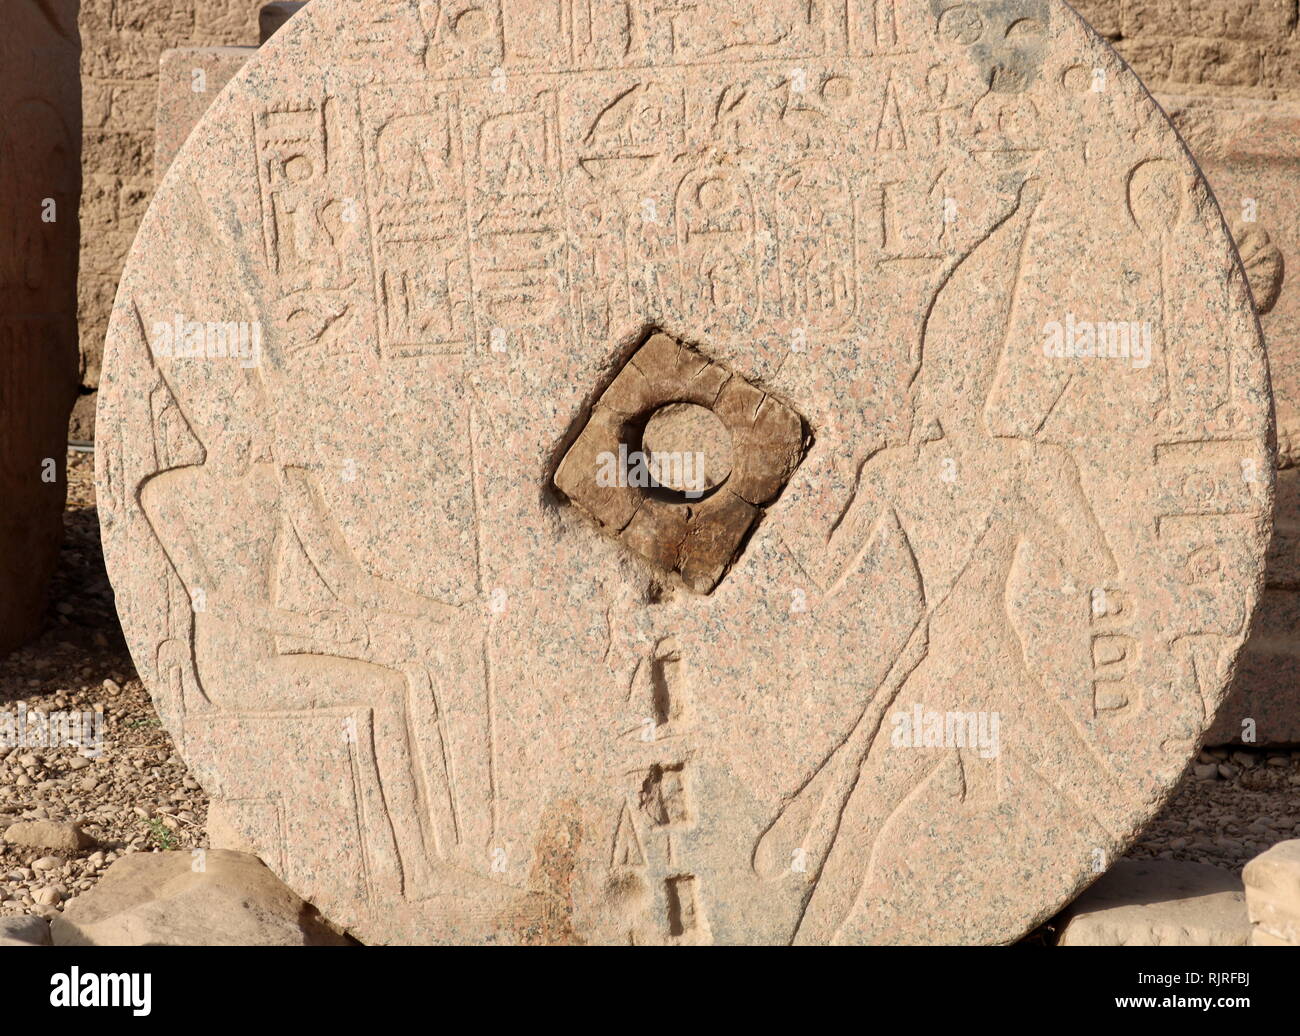 Stele geschnitzt auf einer Getreidemühle Stein, Darstellung von Tutmosis III und der Gott Amun, im Tempel der Hathor, Dendera Ägypten. Thutmose III (Tutmosis III) war der sechste Pharao der achtzehnten Dynastie. Offiziell, Thutmosis III. regiert Ägypten für fast 54 Jahre und seine Herrschaft wird in der Regel vom 24. April 1479 v. Chr. bis zum 11. März 1425 v. Chr. datiert Stockfoto